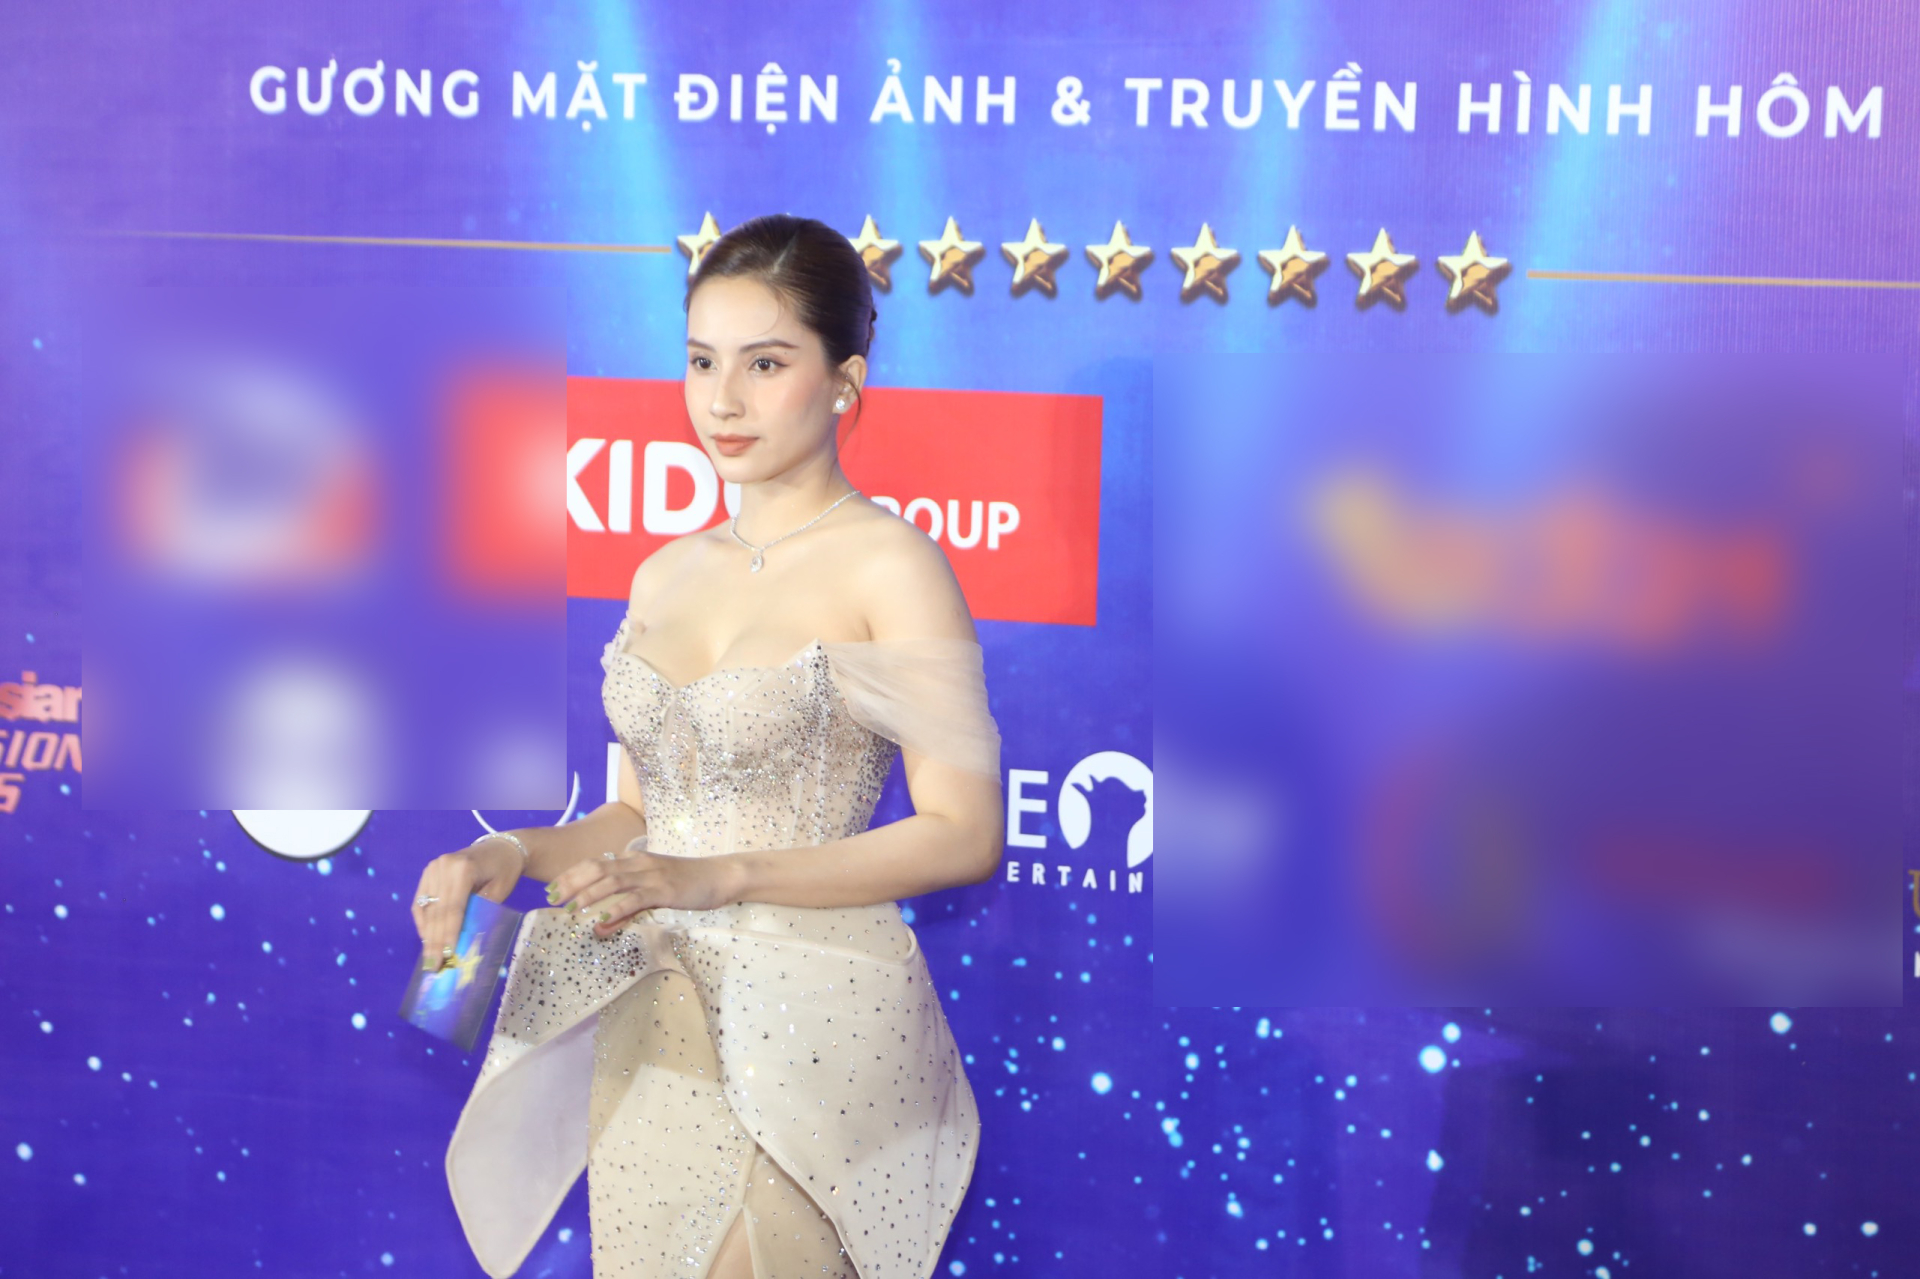 DJ Mie khoe nhan sắc như Hoa hậu, vợ một nam ca sĩ nổi tiếng lộ gương mặt khác lạ trên thảm đỏ - ảnh 9